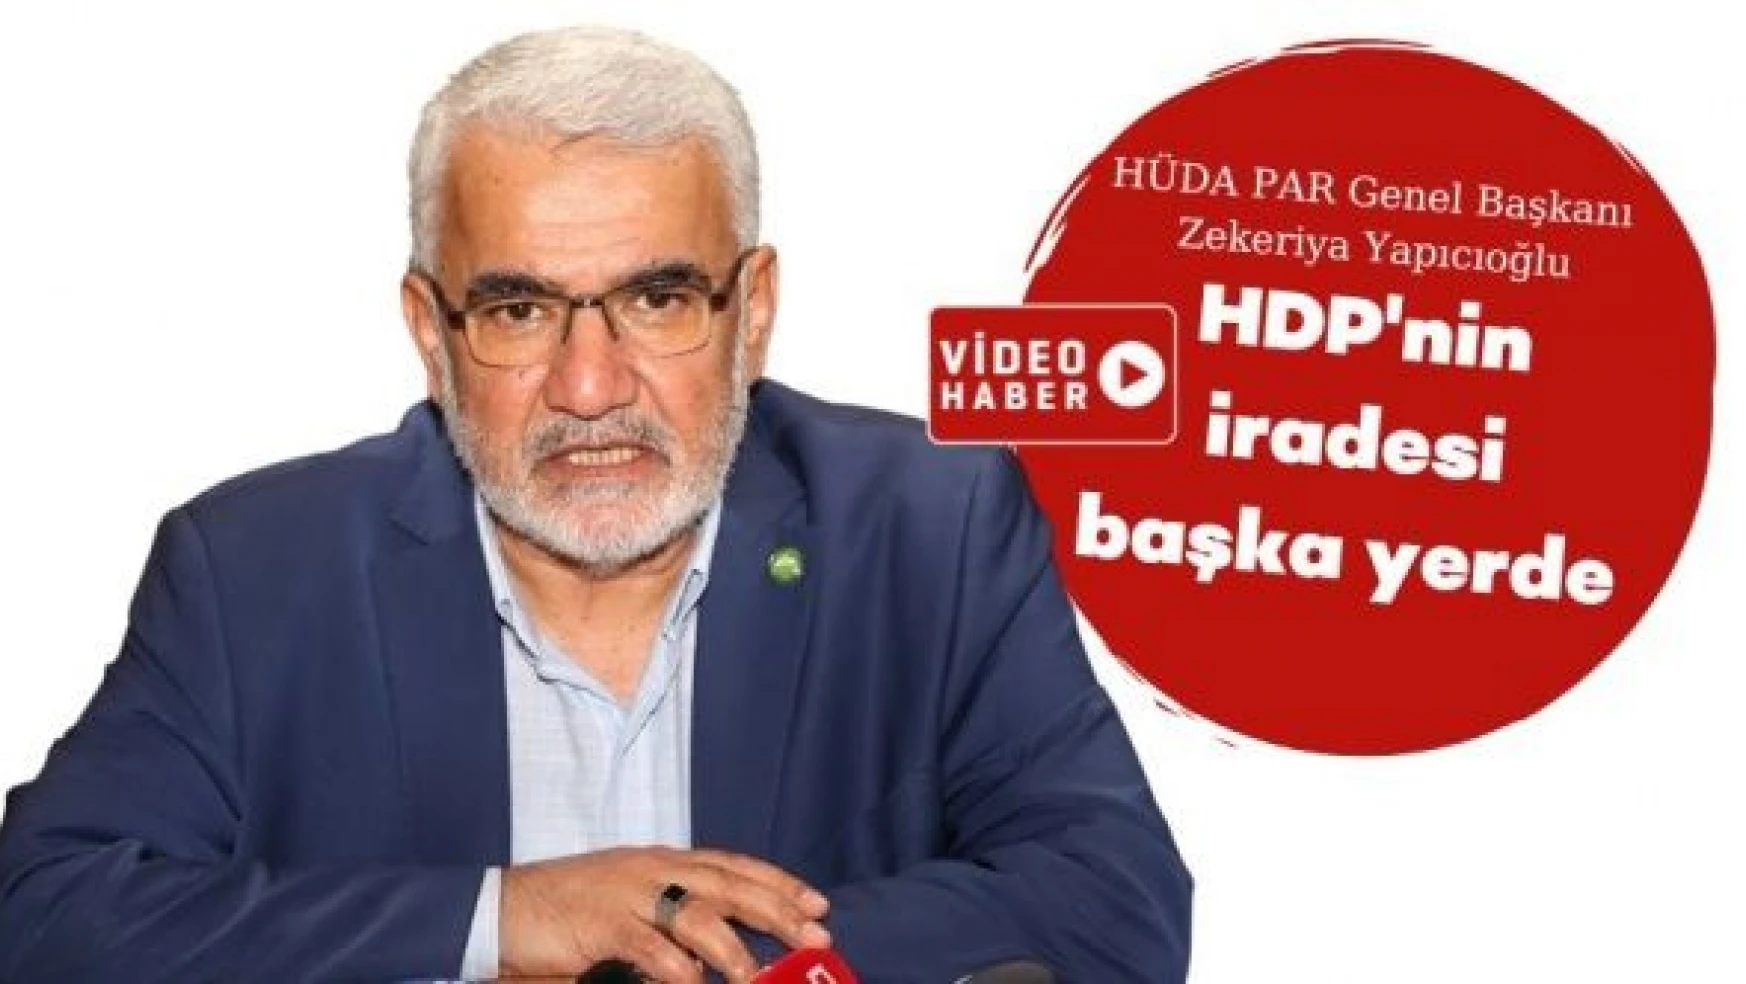 HÜDA PAR'dan HDP ile ittifak açıklaması